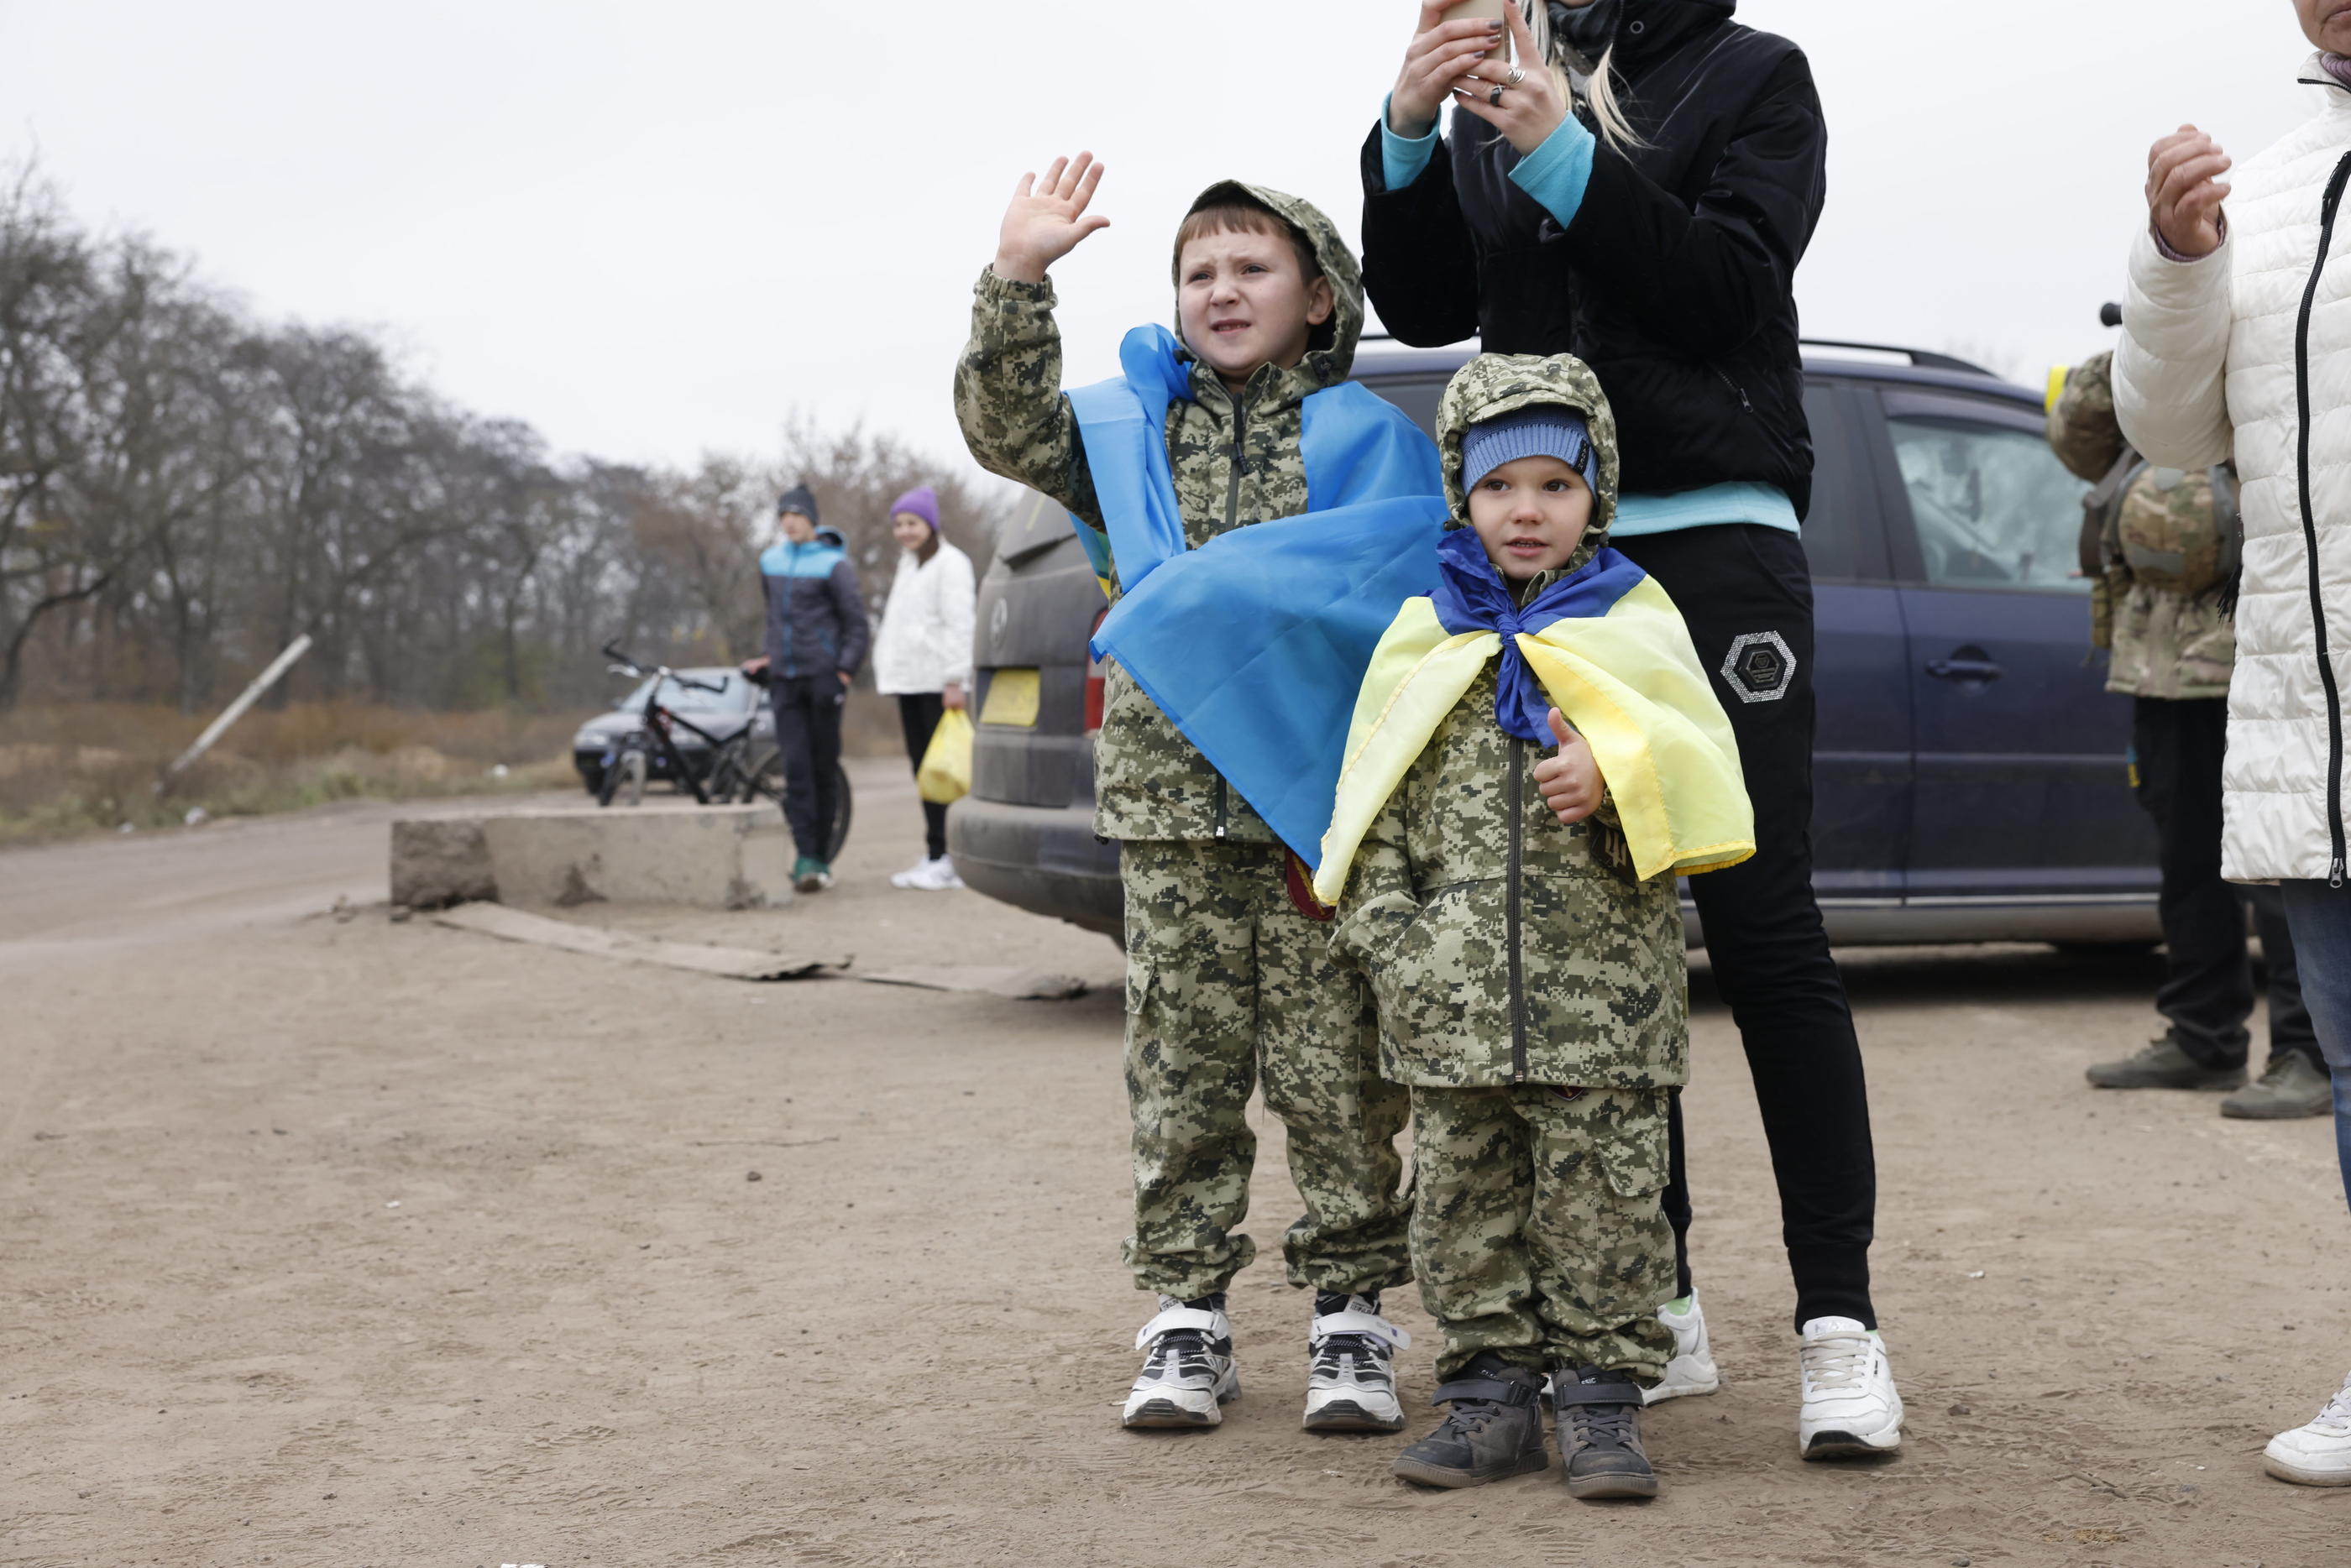 Région de Kherson (Ukraine), le 13 novembre 2022. Margarita et ses deux fils David, 7 ans, et Timour, 5 ans, sont venus saluer les soldats ukrainiens qui viennent libérer leur ville. LP/Olivier Corsan